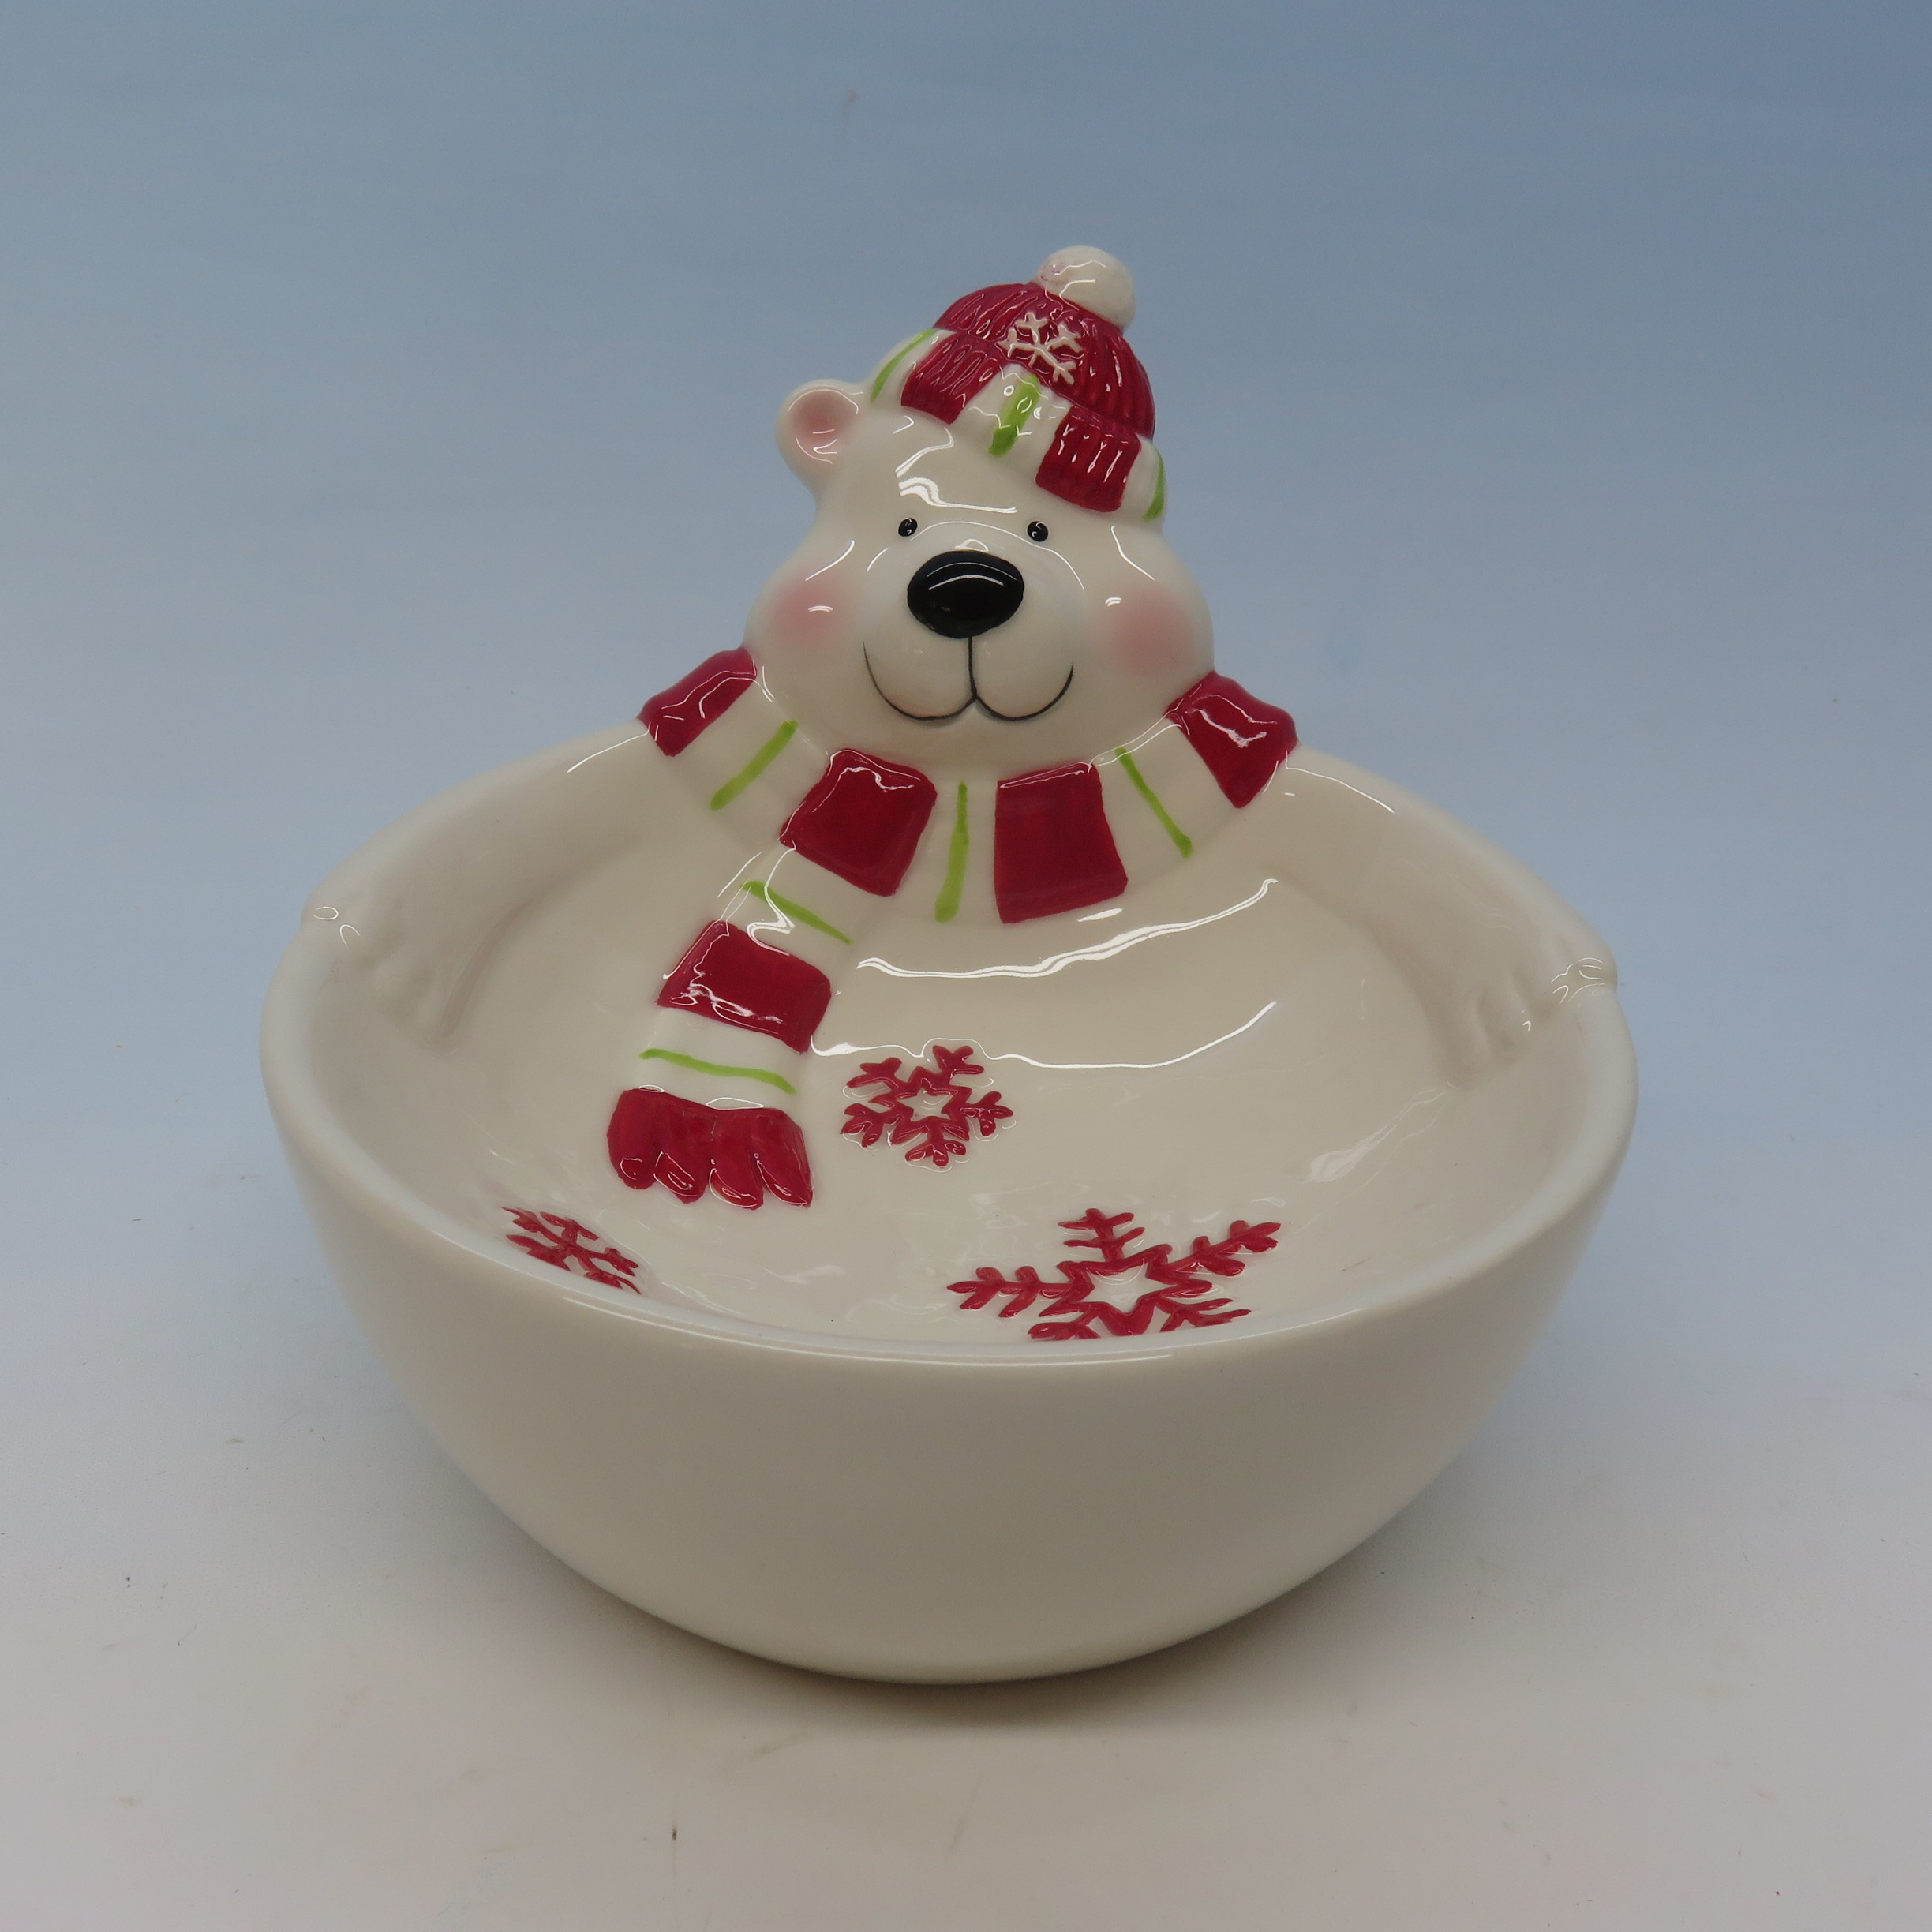 3D Cute White Polar Bear Porcelain Bowl Salad,Dessert,Ice Cream,Fruit,Noodle,Soup,Children Adorable Food Bowl, Ceramic